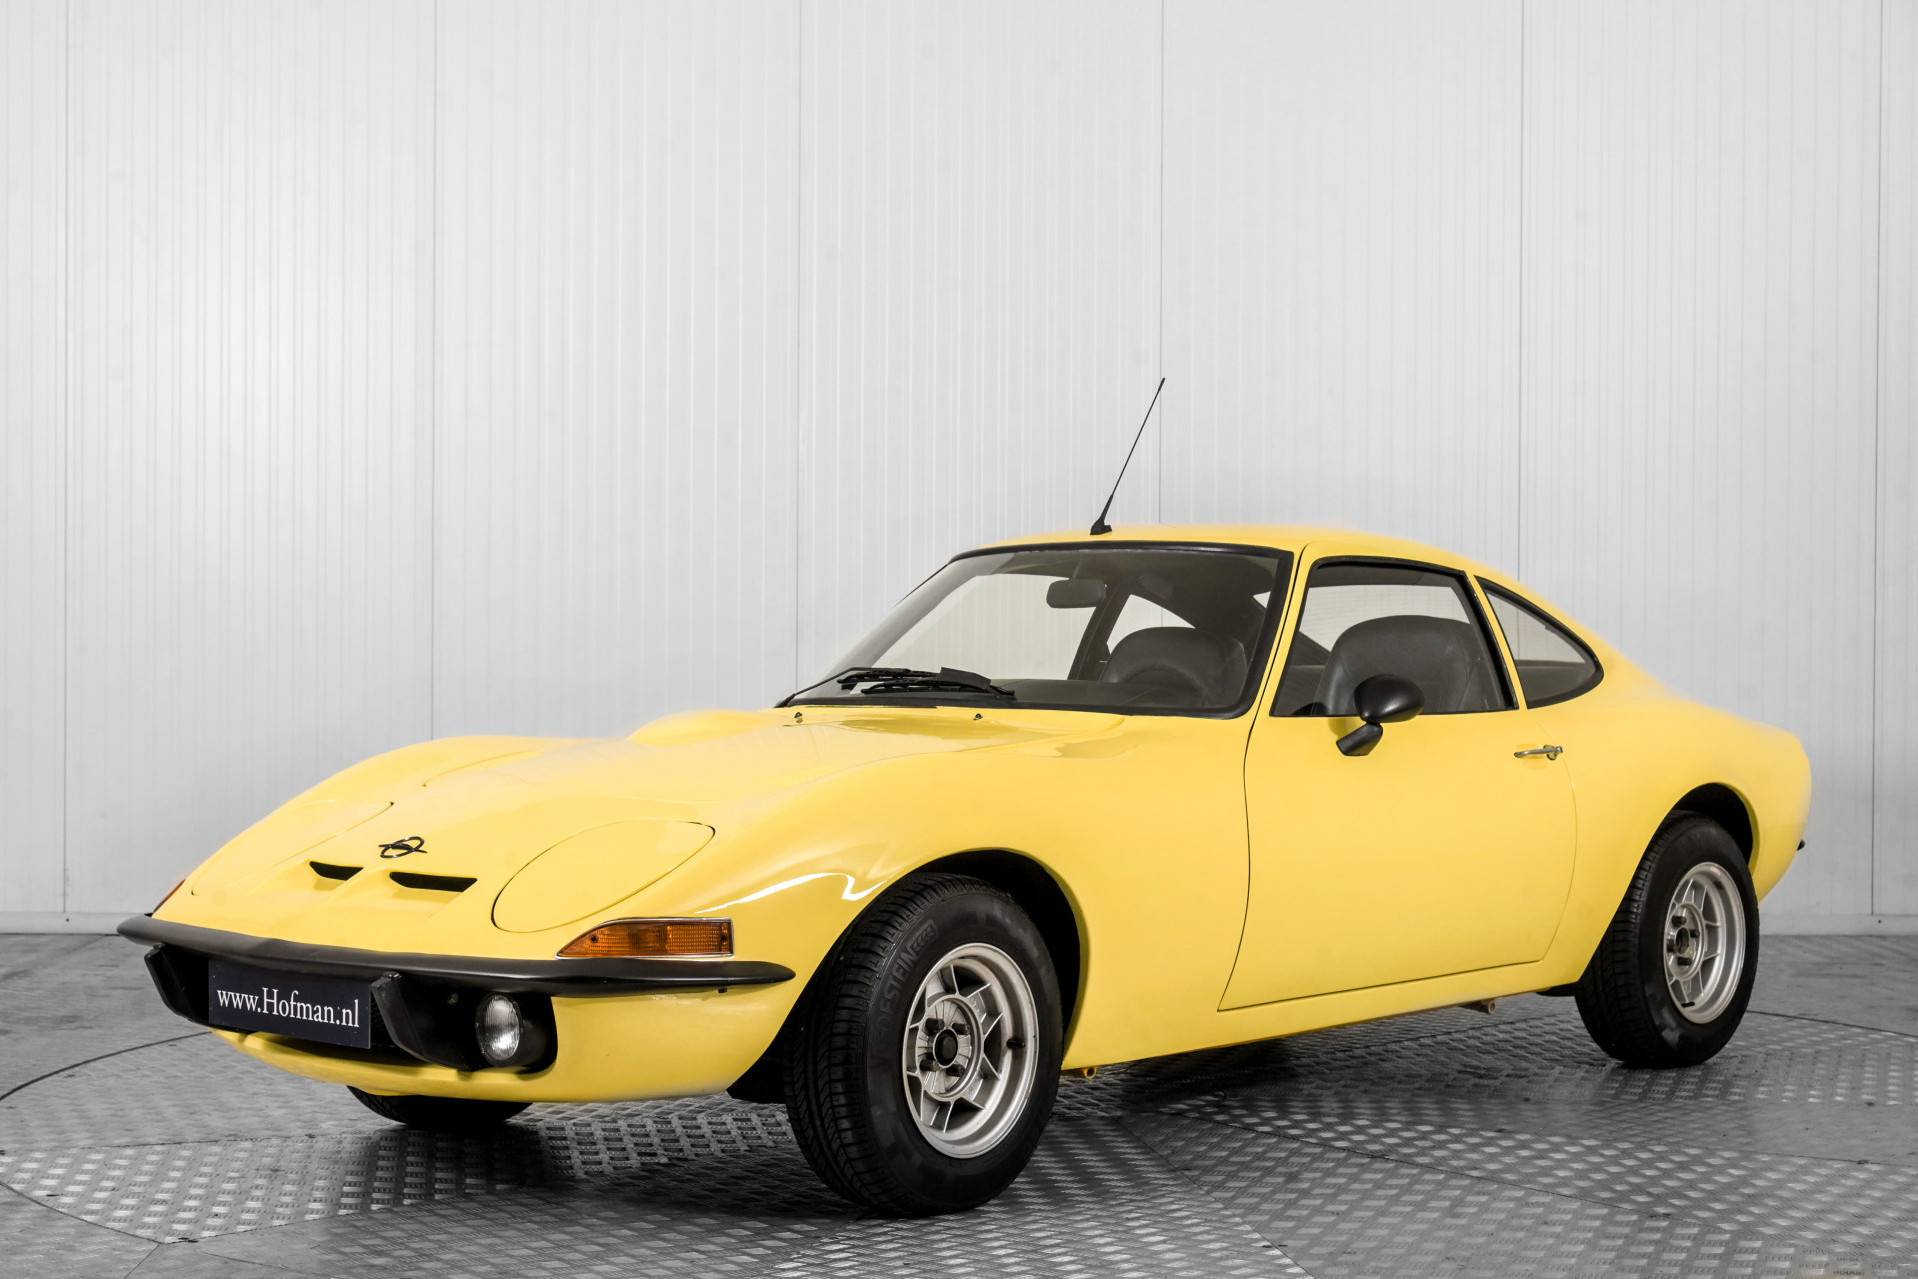 Broek kennis industrie Te koop: Opel GT 1900 (1972) aangeboden voor € 22.900